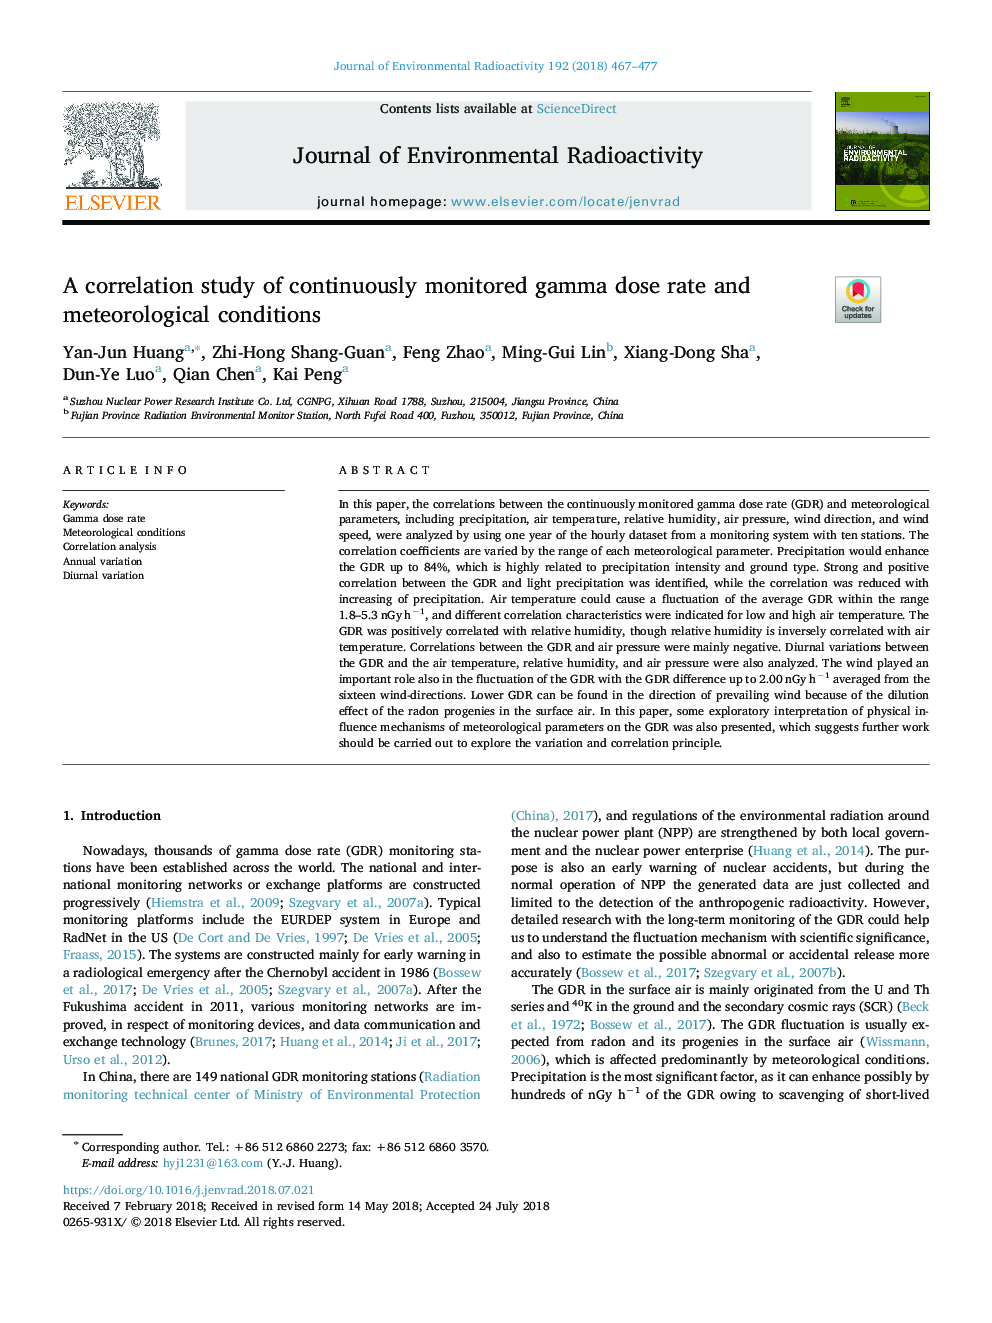 یک مطالعه همبستگی از میزان دوز گامای مداوم و شرایط هواشناسی 